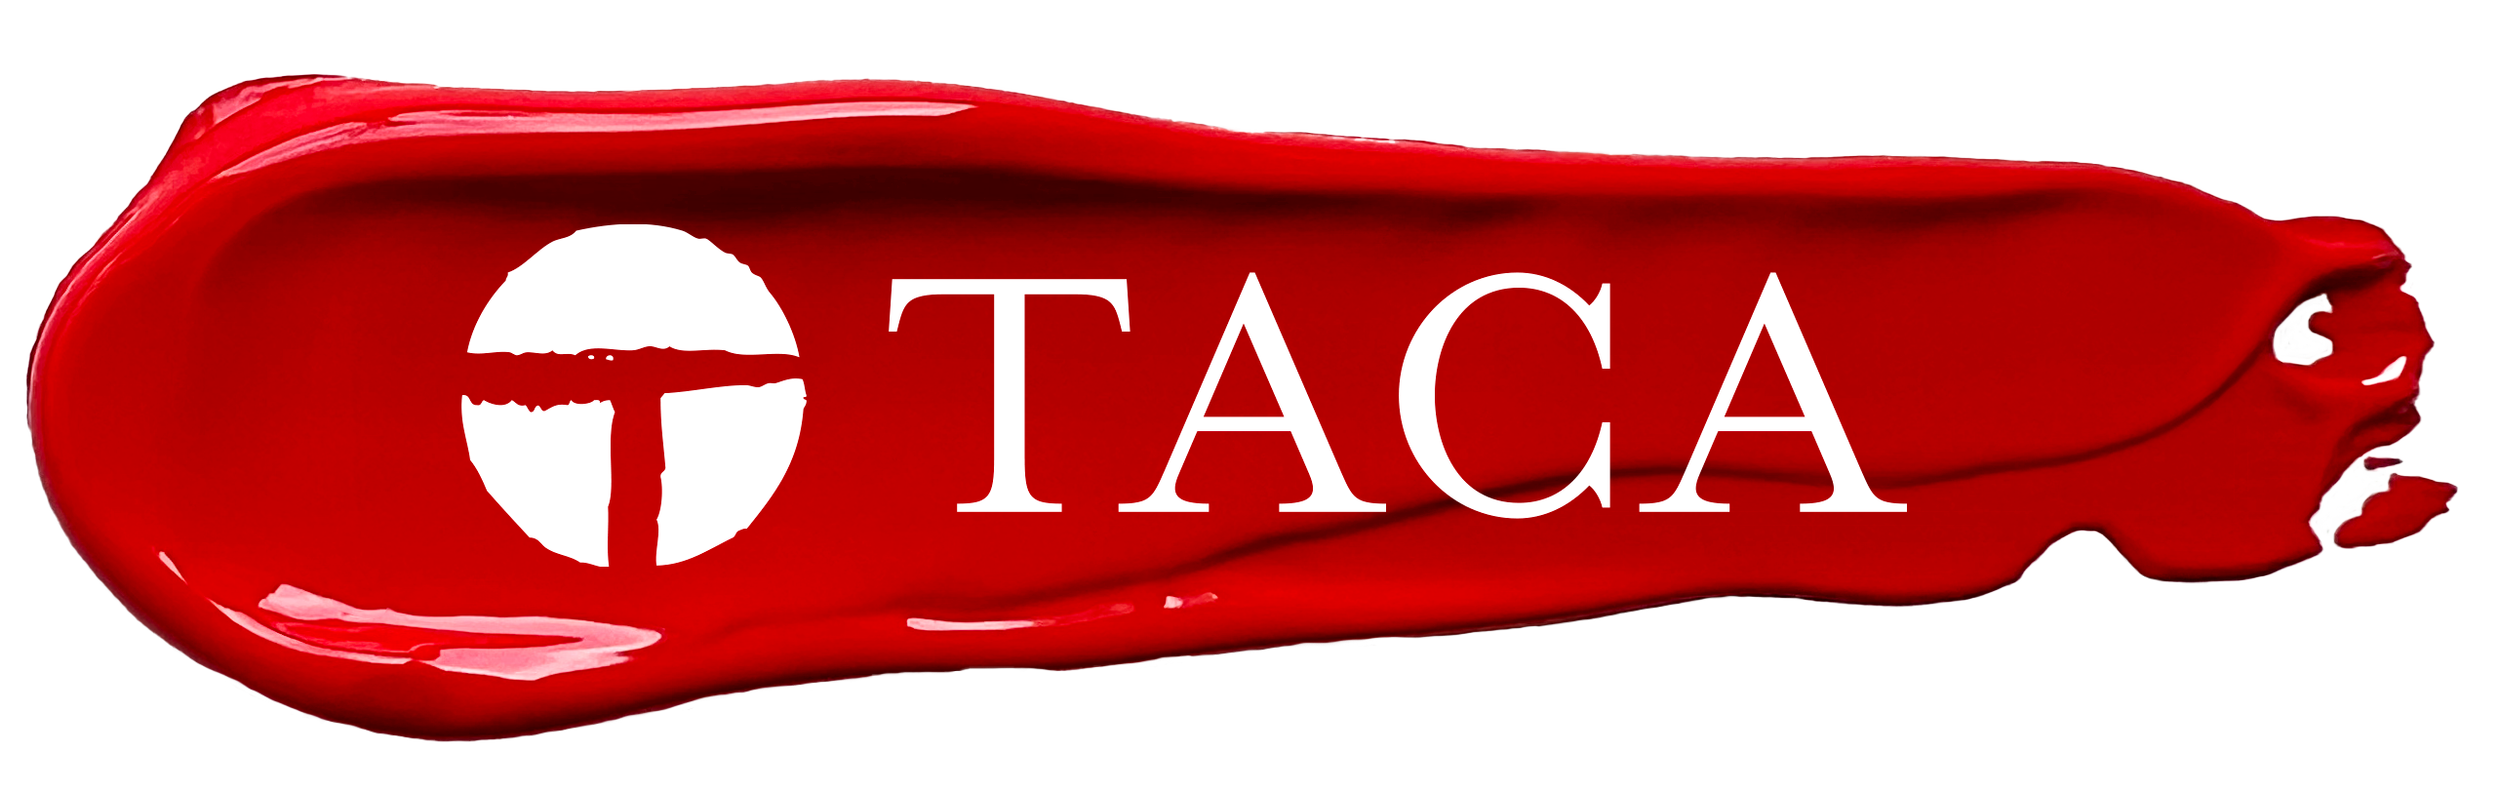 taca-logo-paint23.png